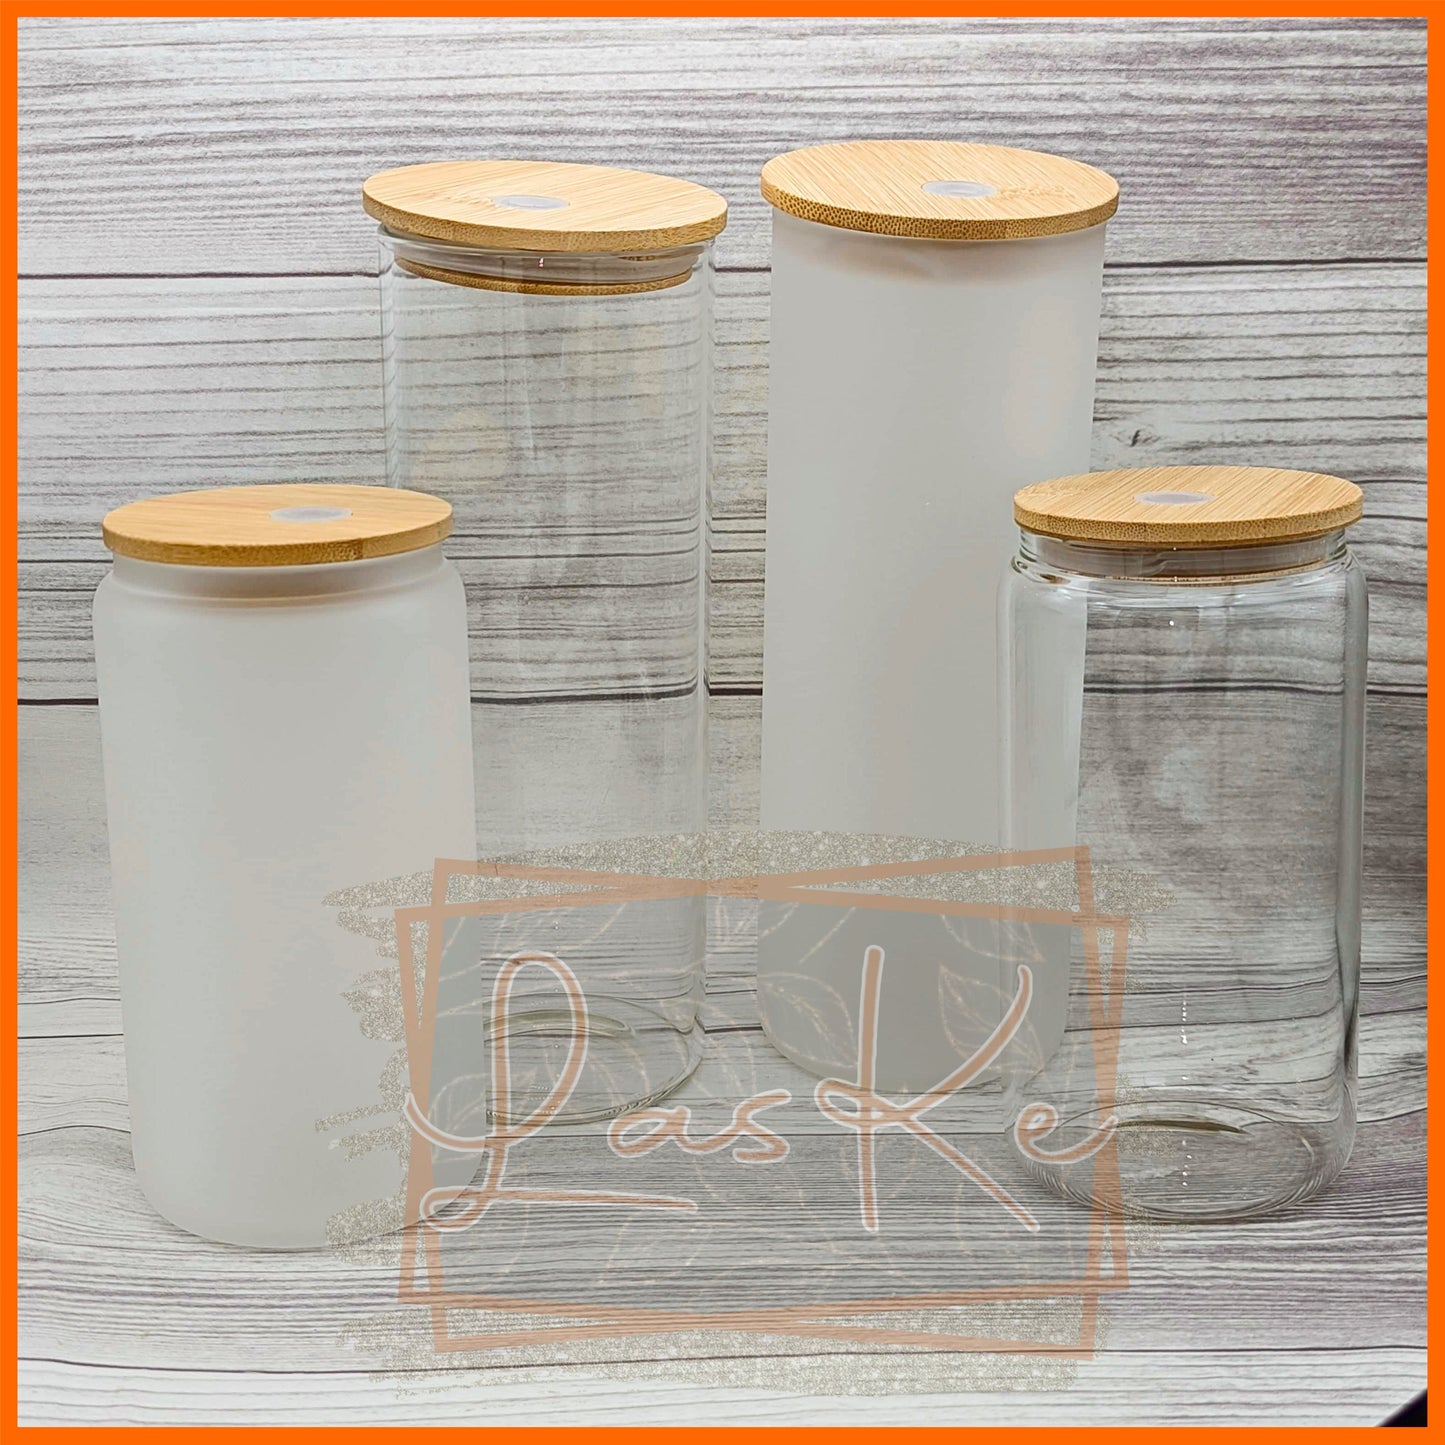 Sampler Pack: Glass Sampler - Blank Drinkware